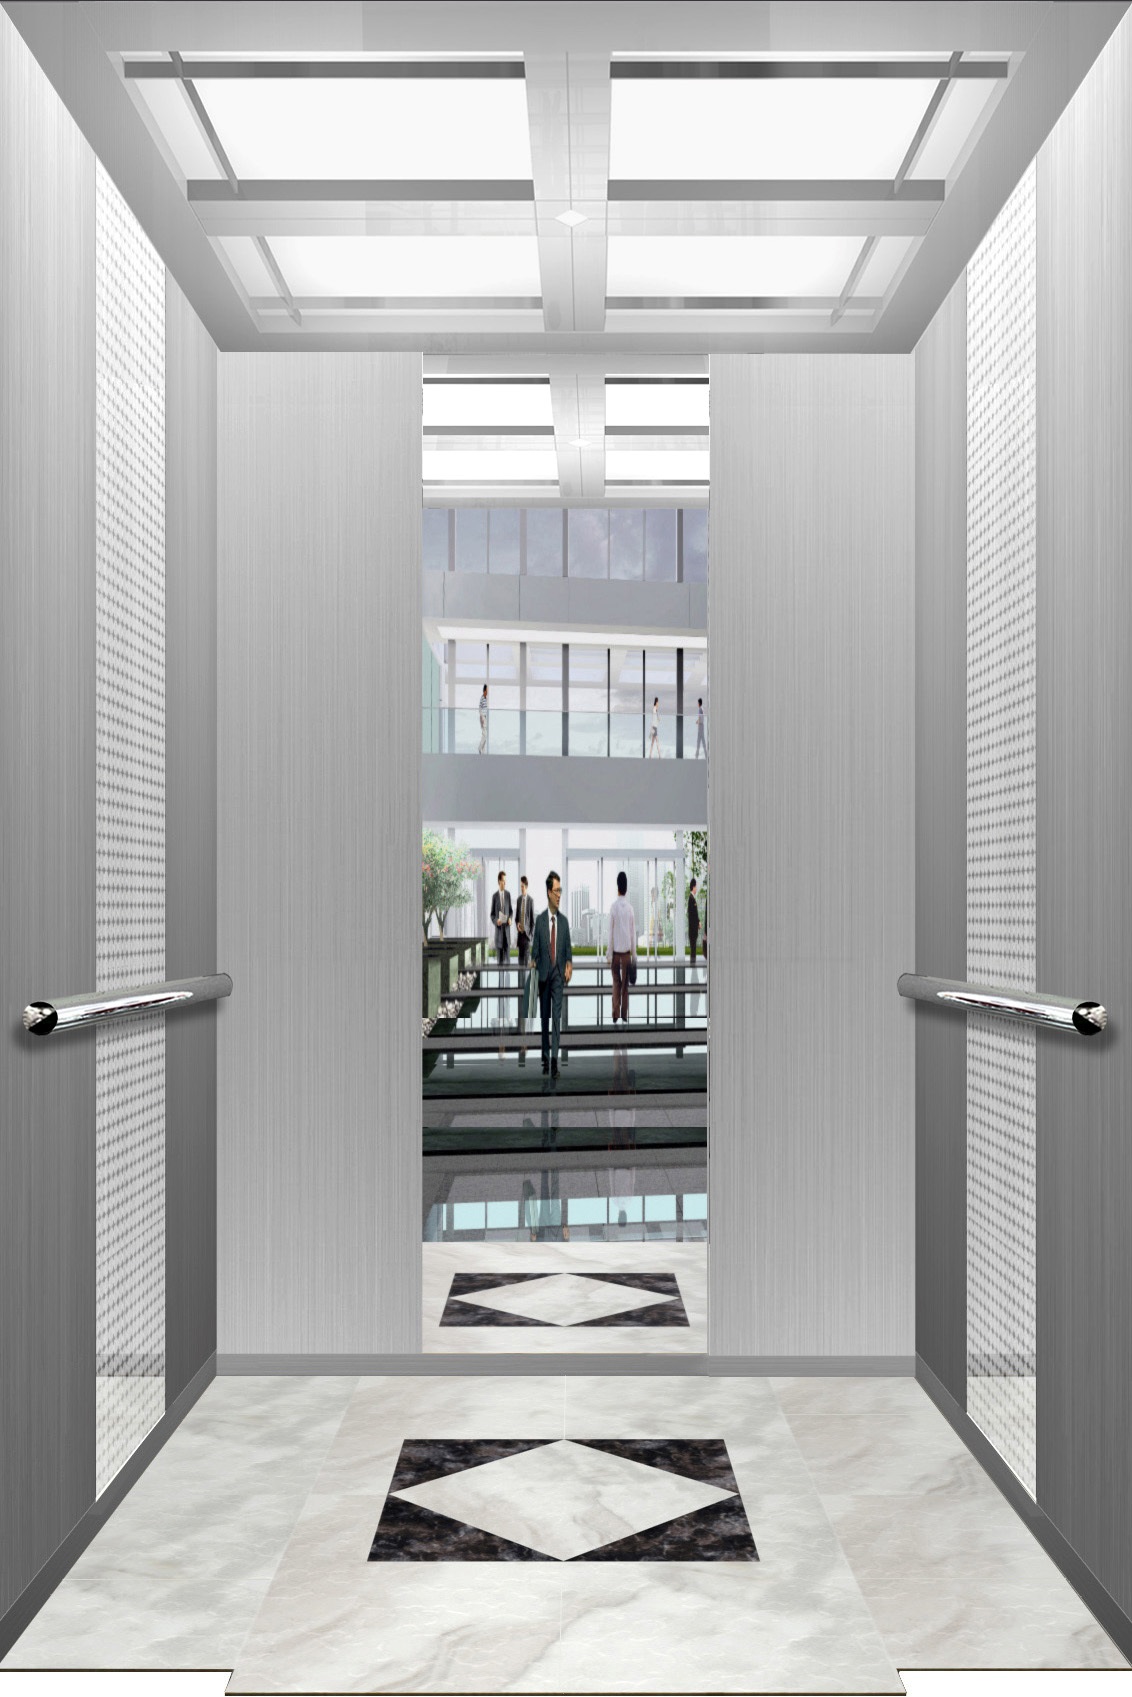 电梯轿厢装饰装潢 - 电梯轿厢装潢效果图 -河南 电梯装潢公司